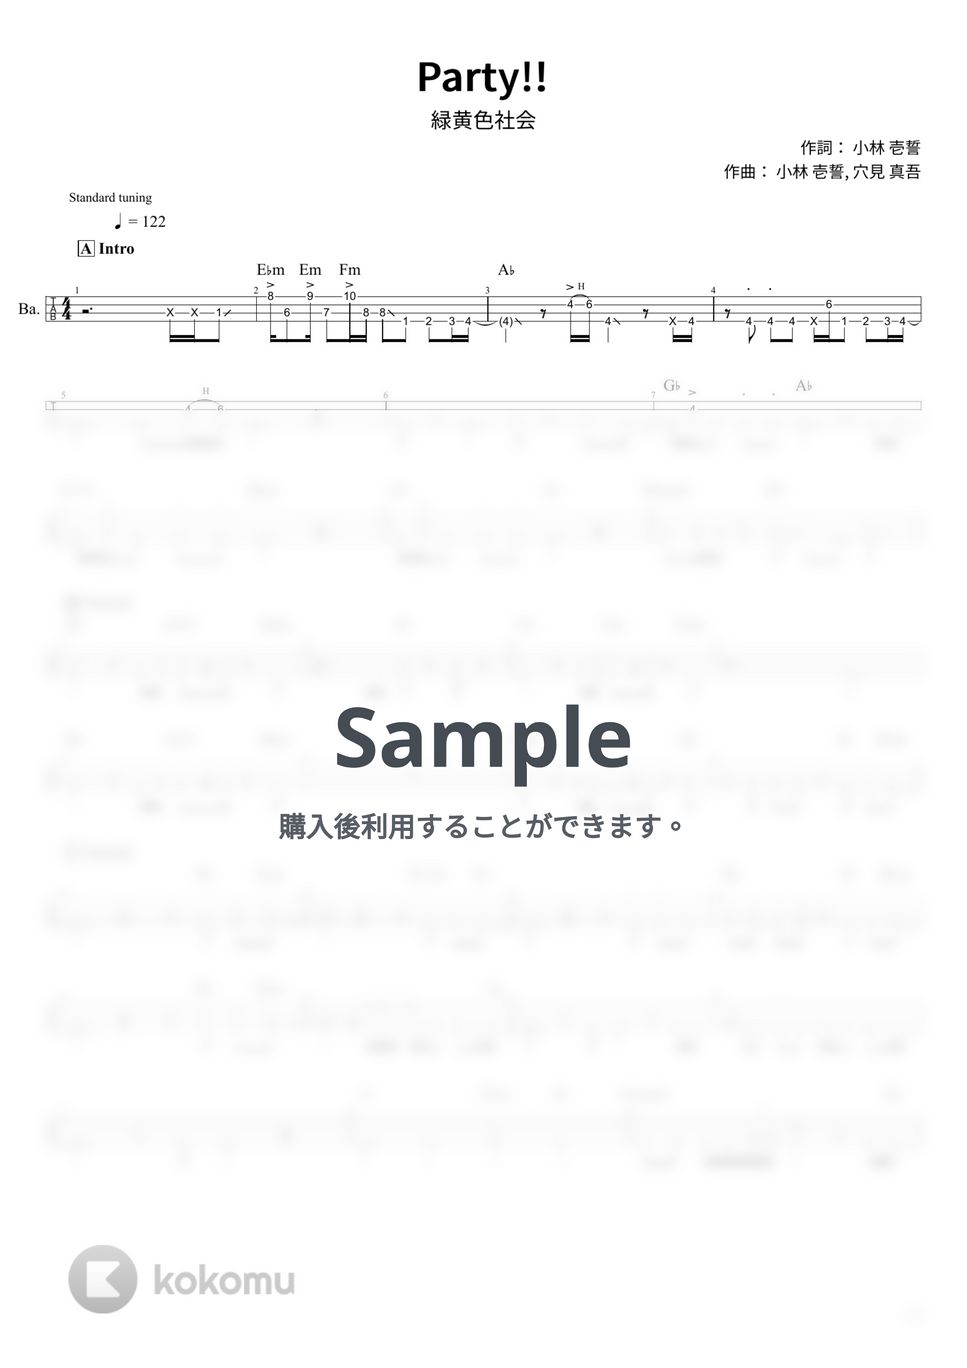 緑黄色社会 - Party!! (Tabのみ/ベース Tab譜 4弦) by T's bass score